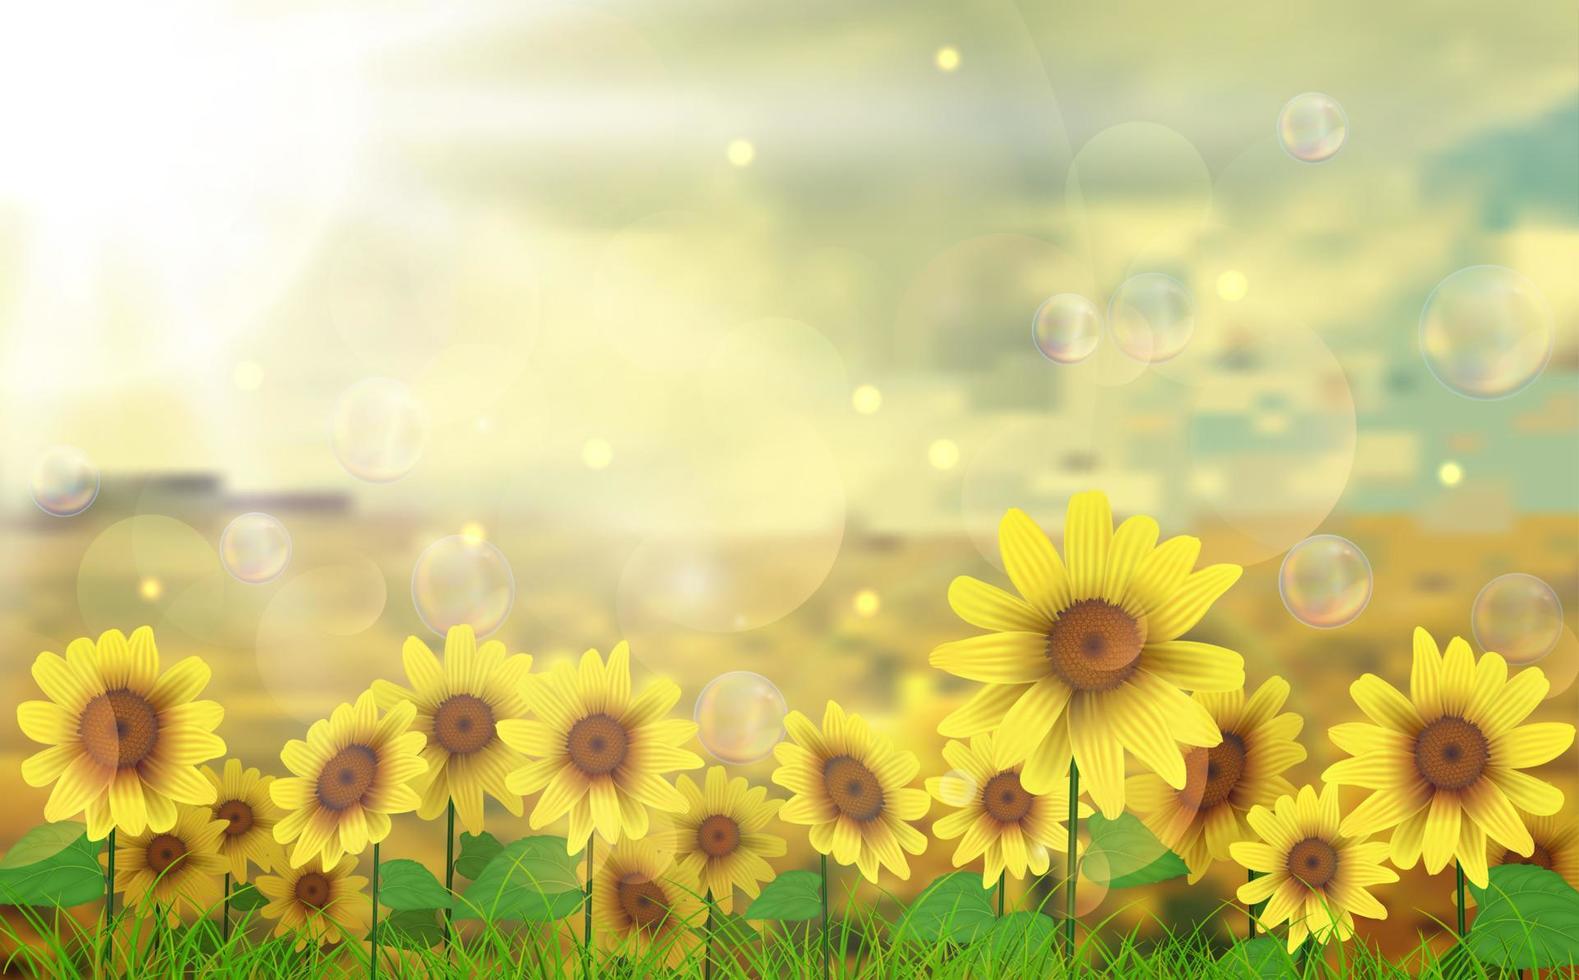 soleil d'été sur le champ de tournesol vecteur